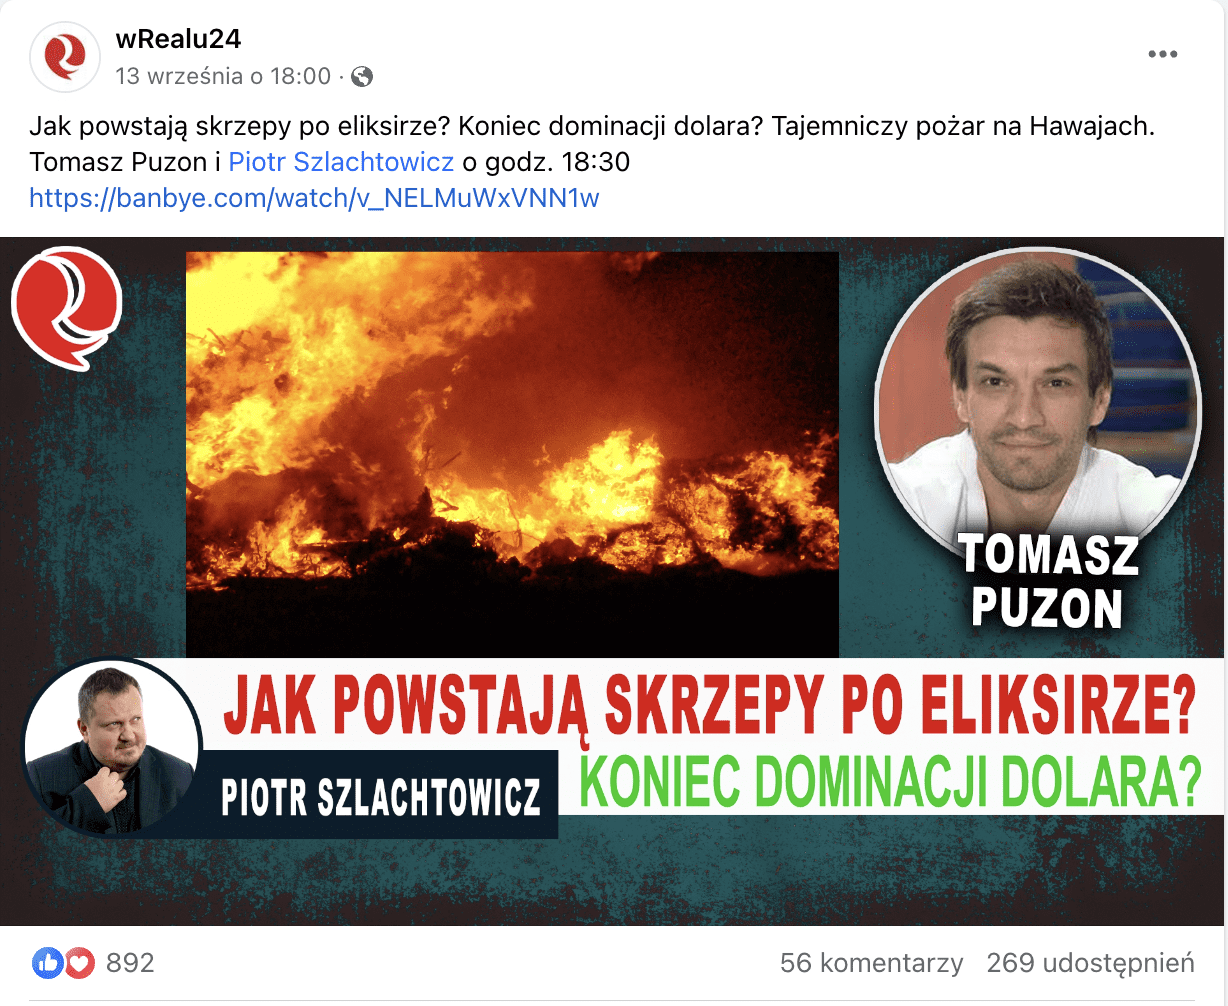 Zrzut ekranu z Facebooka. Na zdjęciu promującym rozmowę opublikowaną w serwisie wRealu24 widzimy Piotra Szlachtowicza i Tomasza Puzona. Post cieszy się dużym zainteresowaniem internautów – polubiono go niemal 900-krotnie.